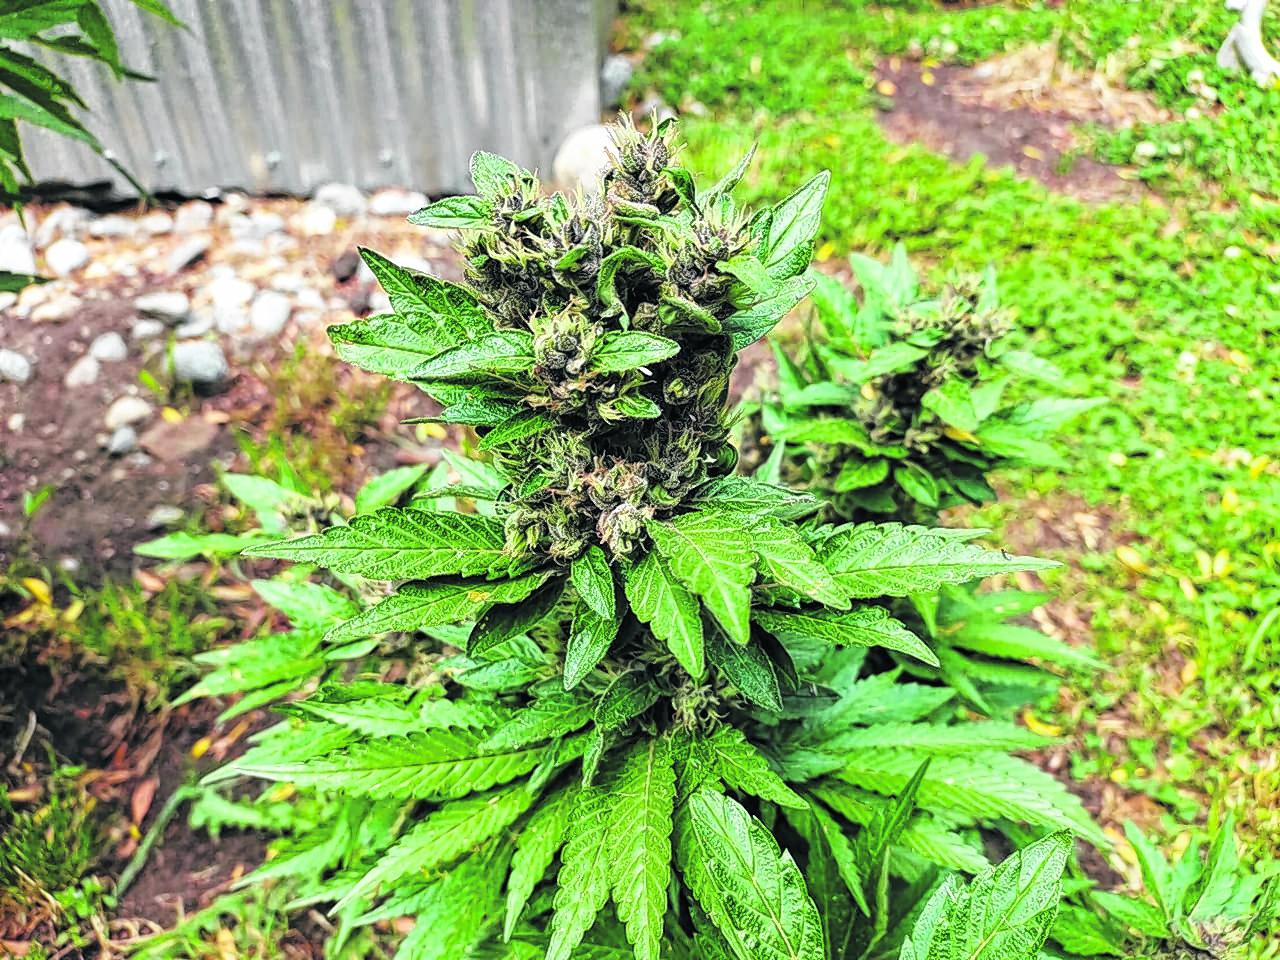 El máximo permitido de plantas de cannabis medicinal para autocultivo son nueve según establece la ley nacional. Foto gentileza.